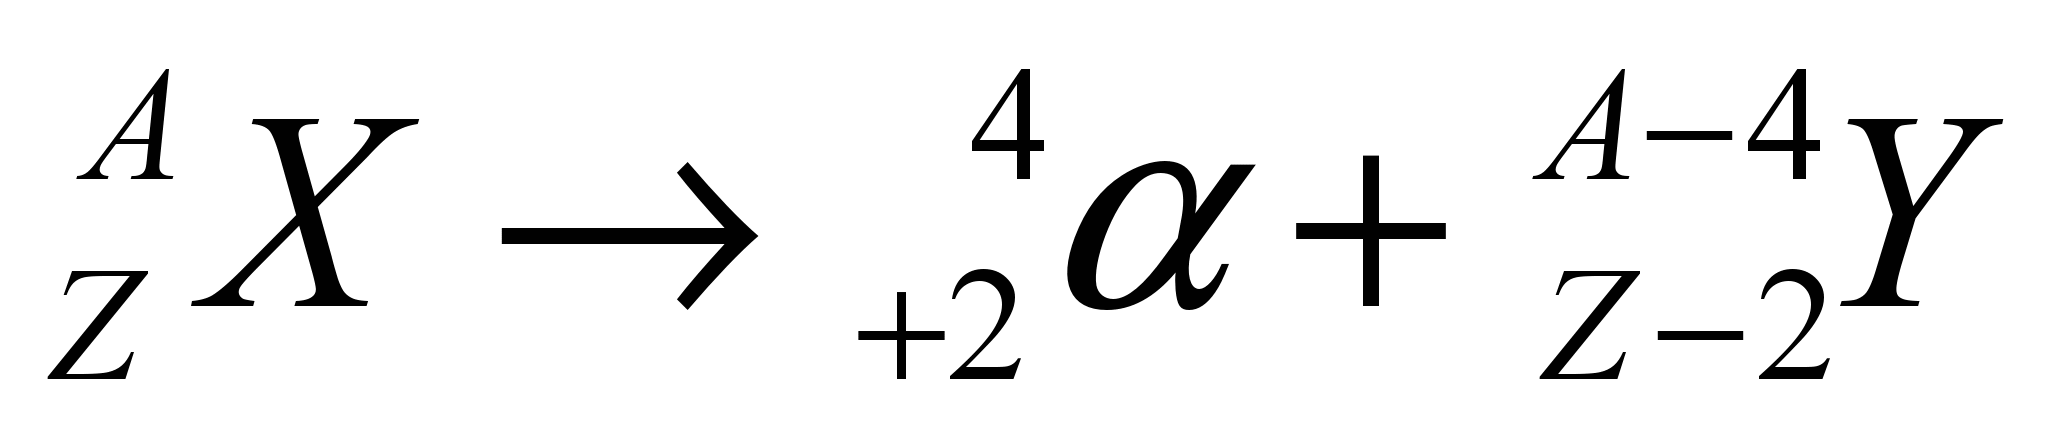 Написать уравнение альфа распада